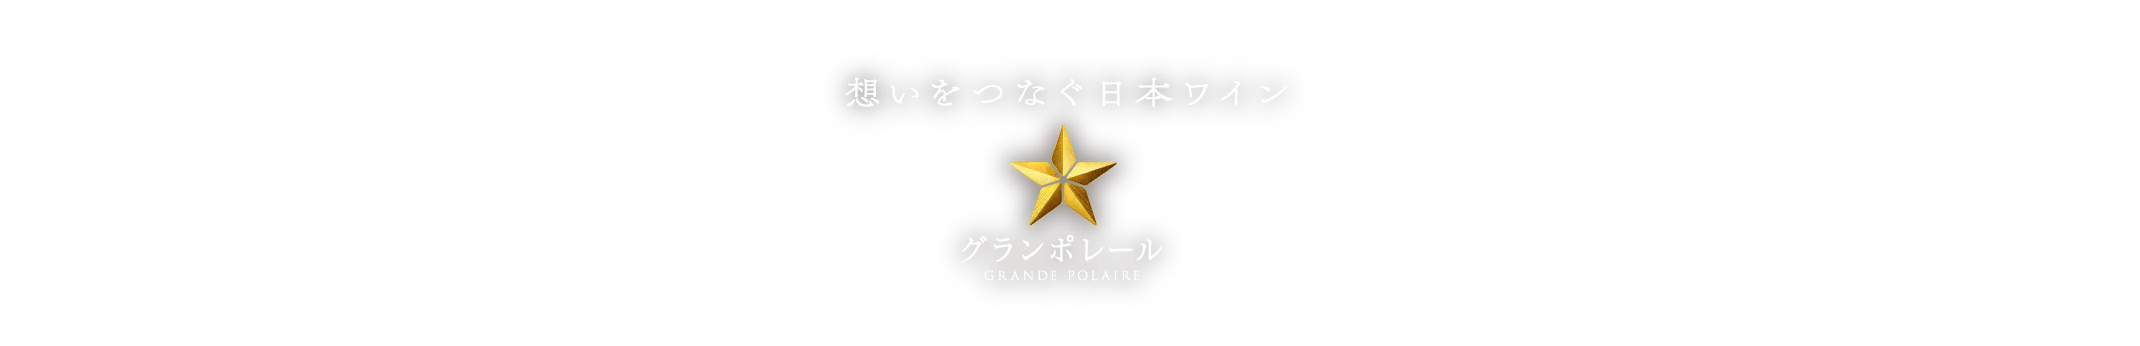 想いをつなぐ日本ワイン グランポレール GRANDE POLAIRE